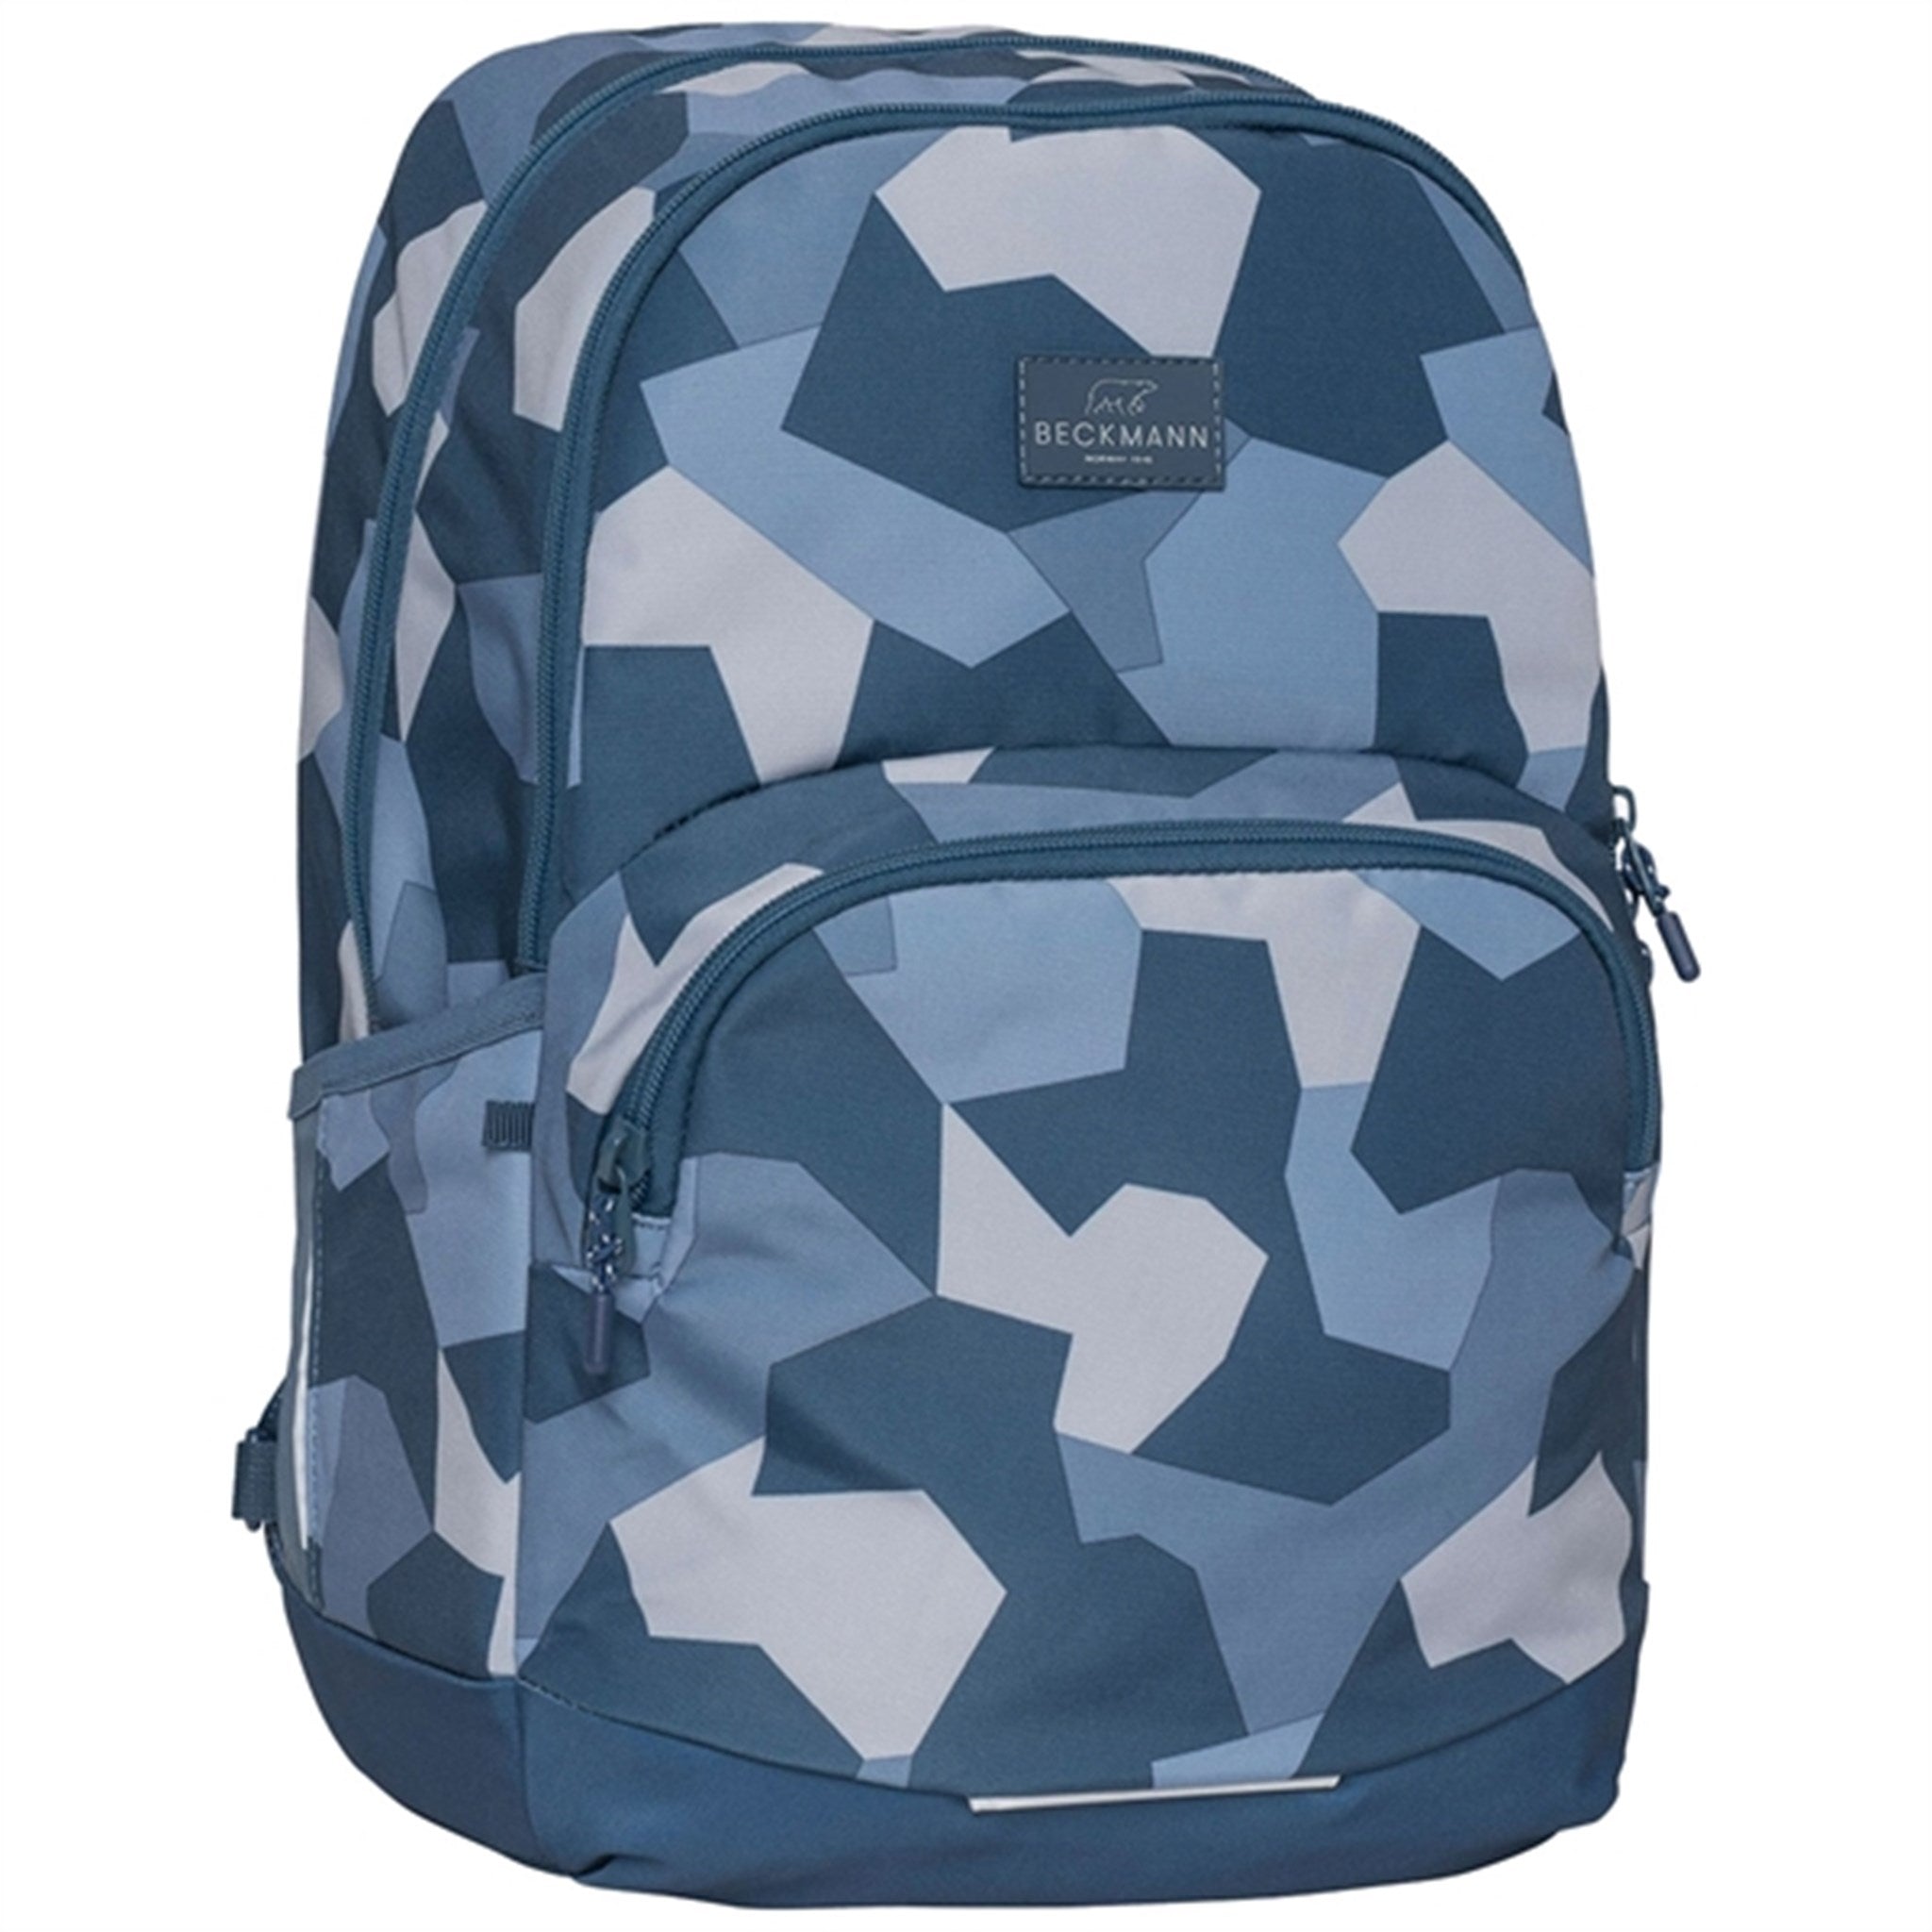 Beckmann Sport Junior Backpack Blue Camo 4